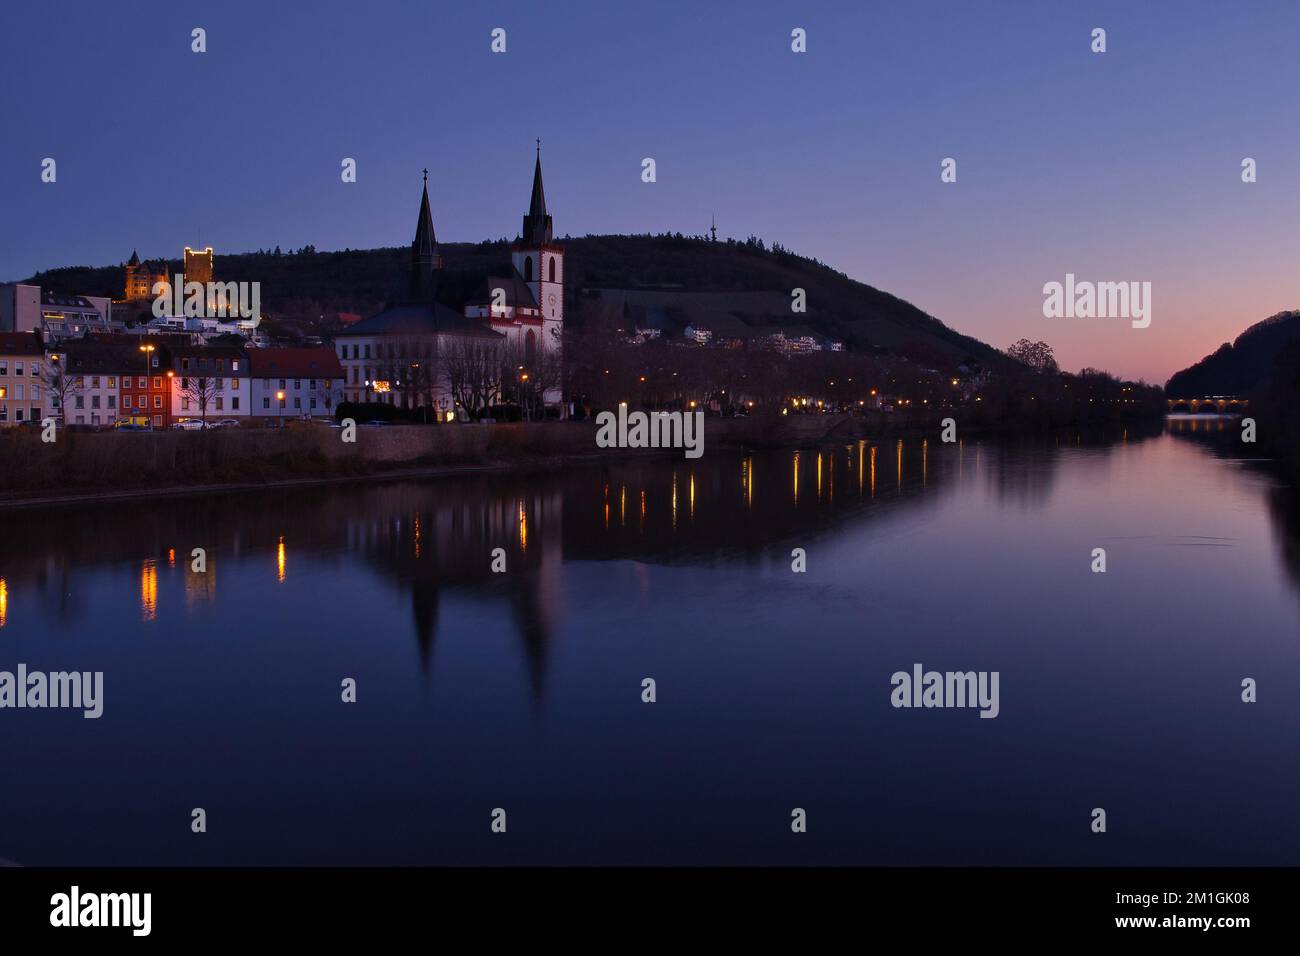 Bingen am Rhein, Deutschland - 10. Januar 2021: Farbenfroher Himmel über Schloss Klopp, Kirche und Brücke mit ihren Reflexionen im Rhein im Winter n Stockfoto